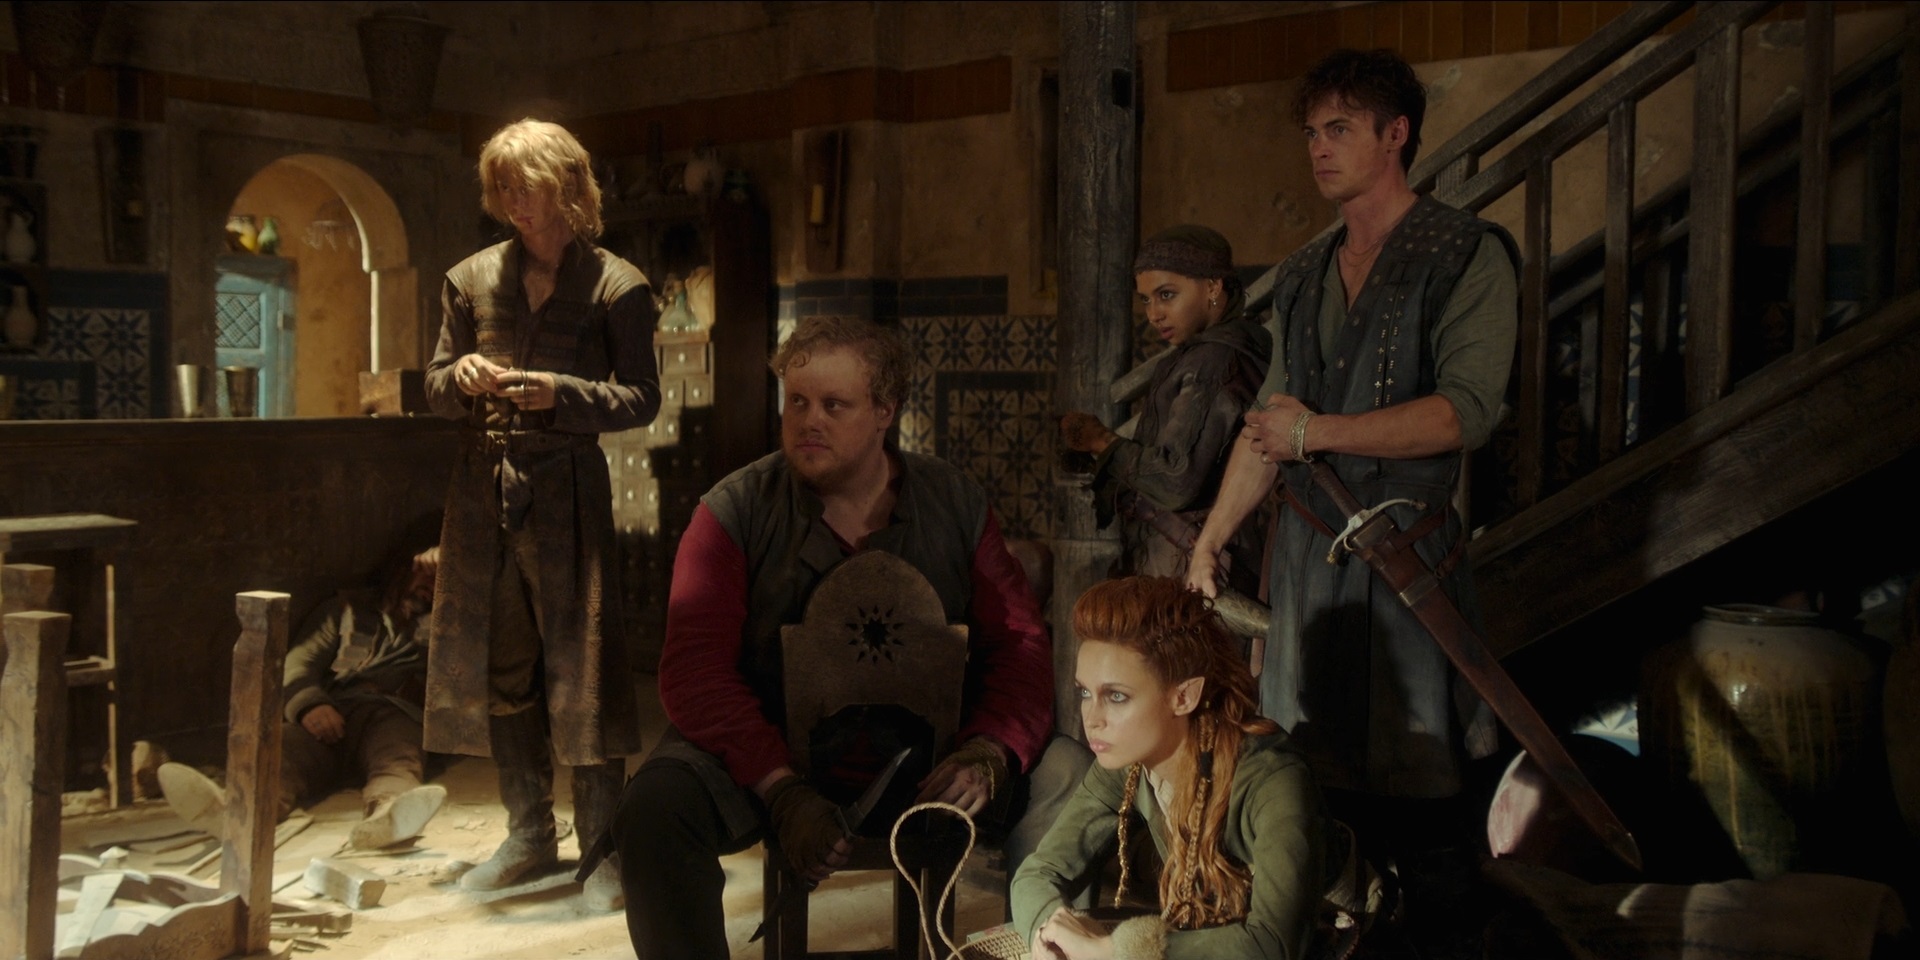 EXCLUSIVO, The Witcher: Henry Cavill e elenco comentam o final 3ª temporada;  veja a entrevista